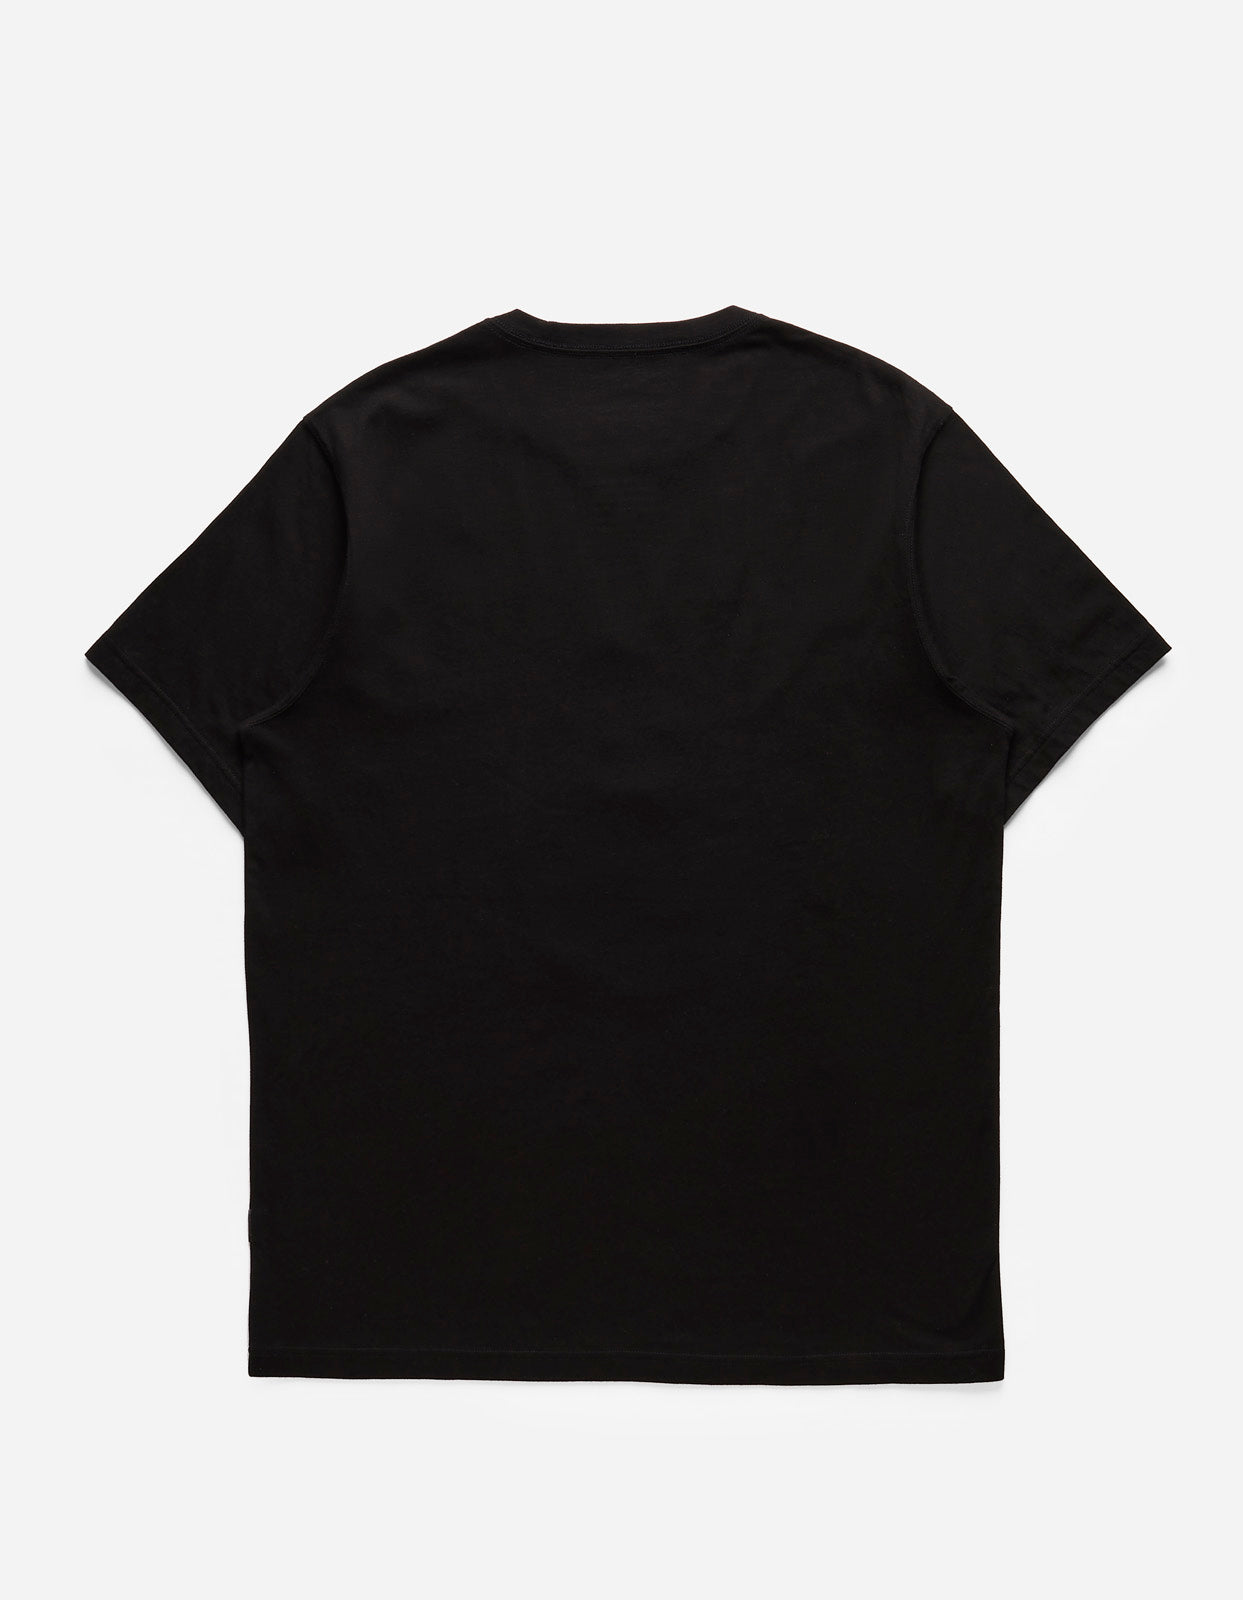 5102 Maha Tiger T-Shirt Black